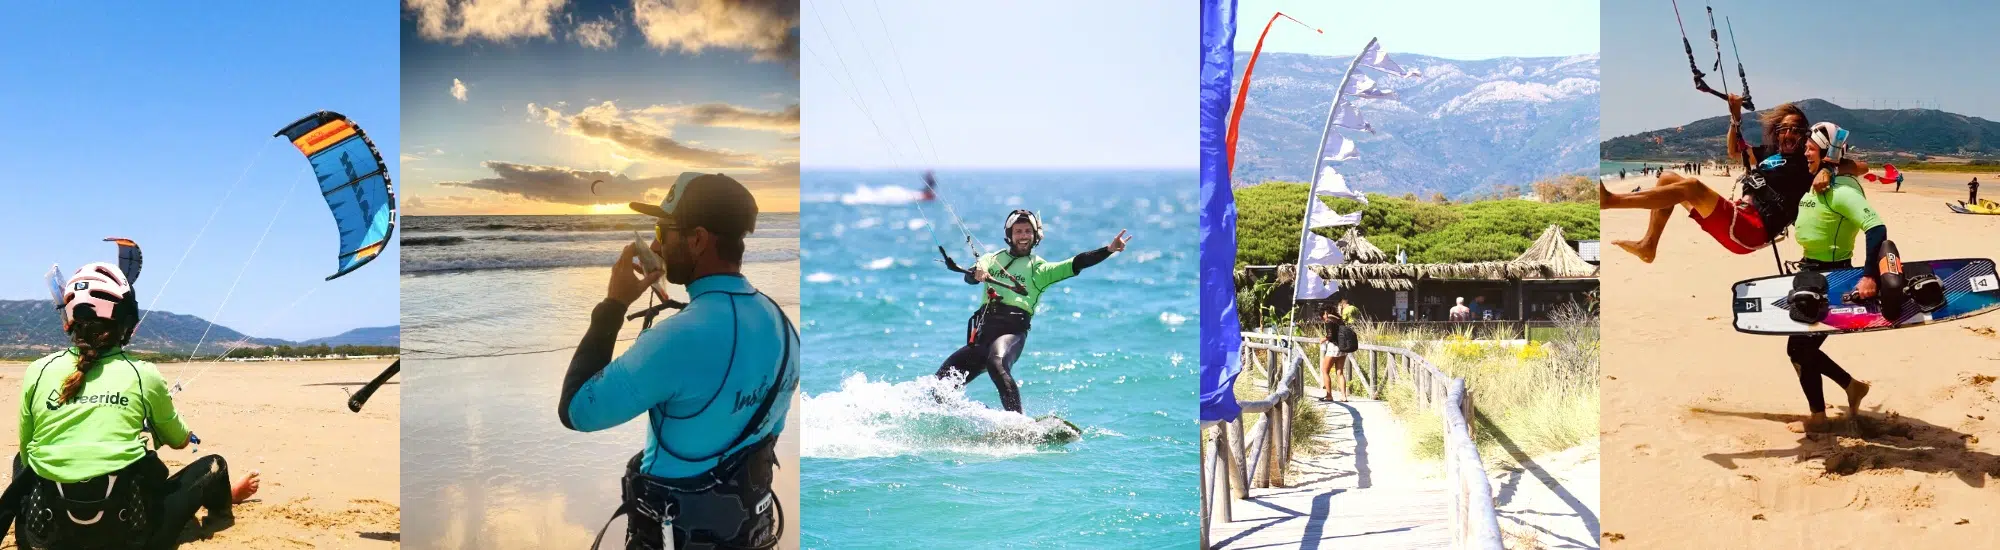 Cursos de kitesurf en Tarifa en español para todo niveles desde principiantes a avanzados